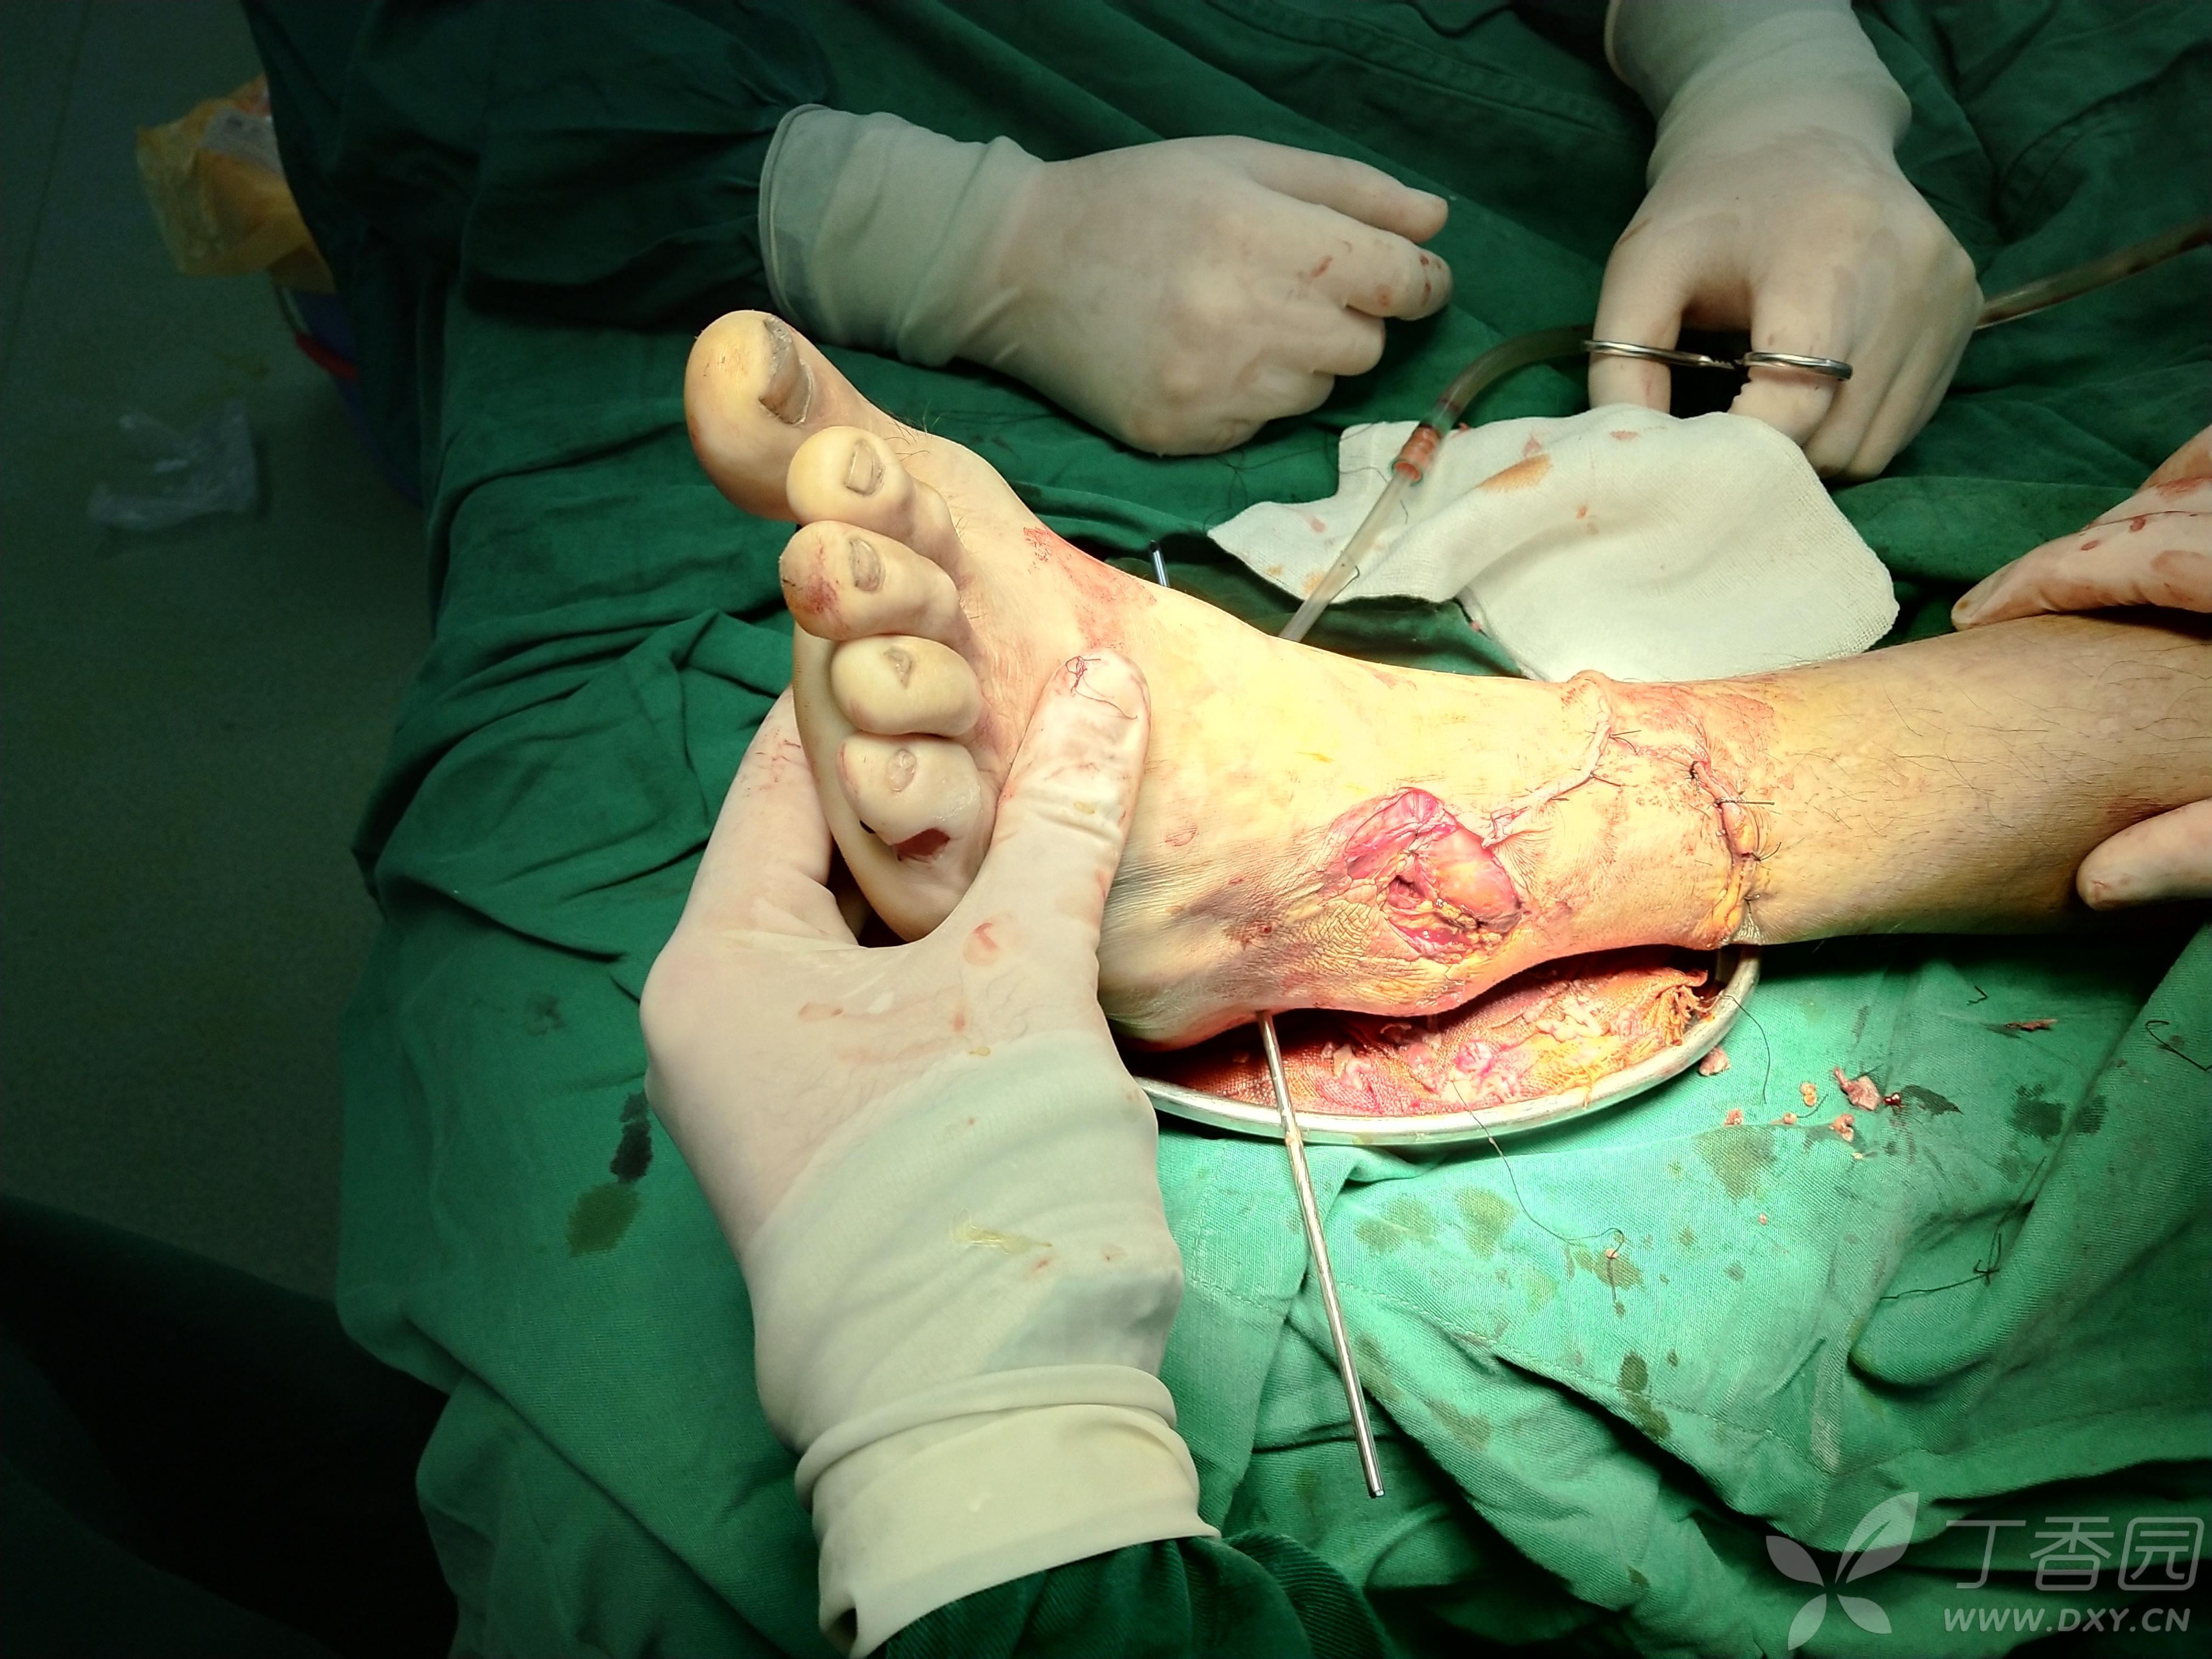 急诊手术行清创缝合vsd覆盖引流 跟骨骨牵引术